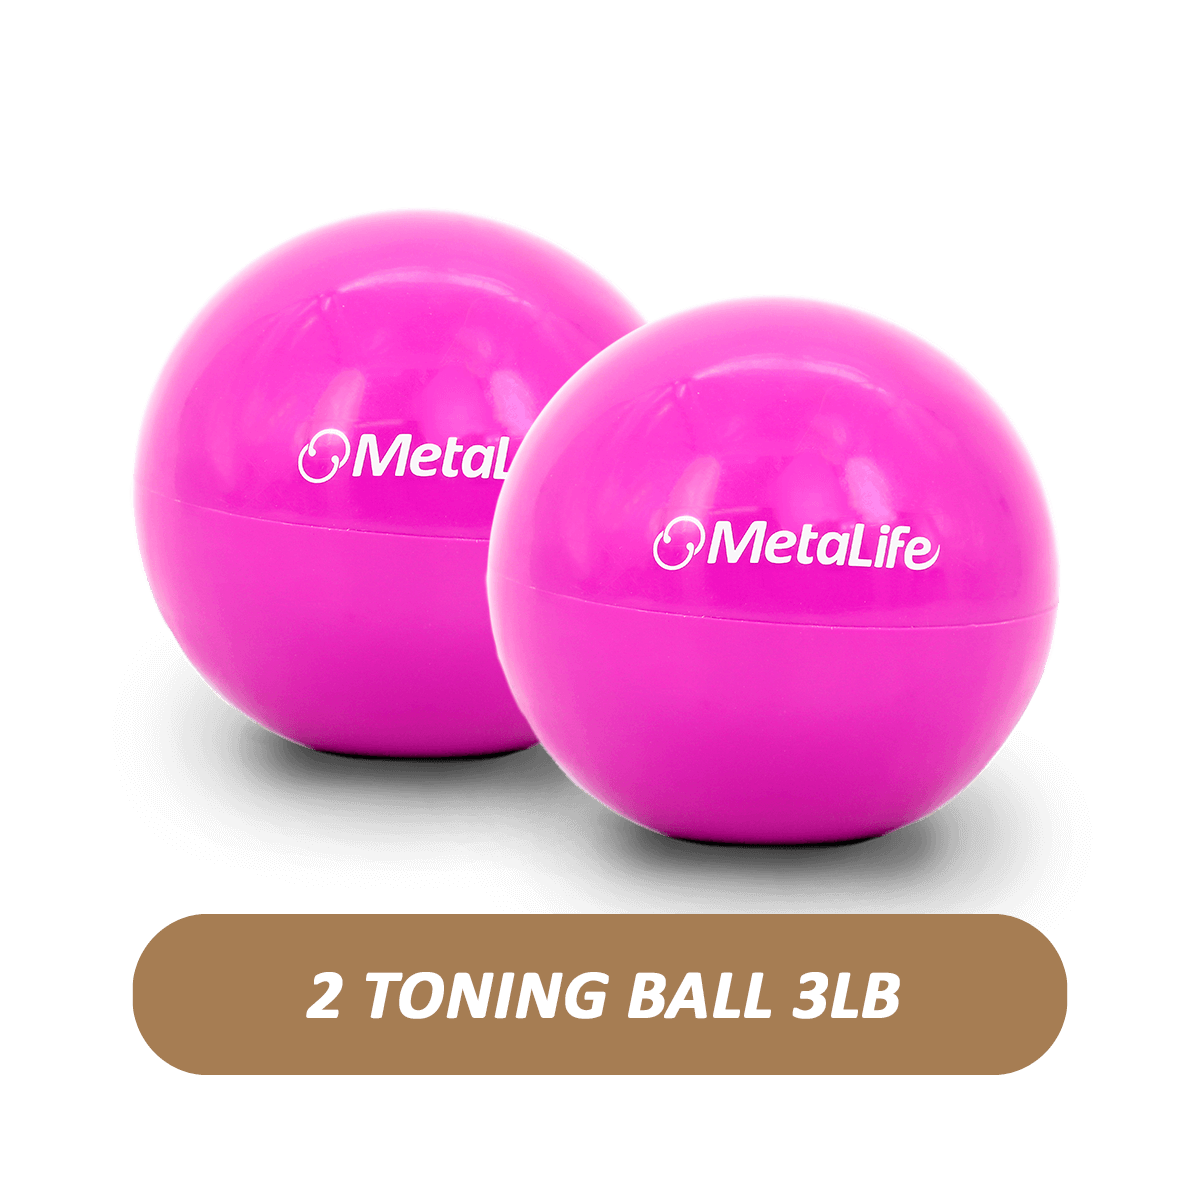 Toning ball 3lb